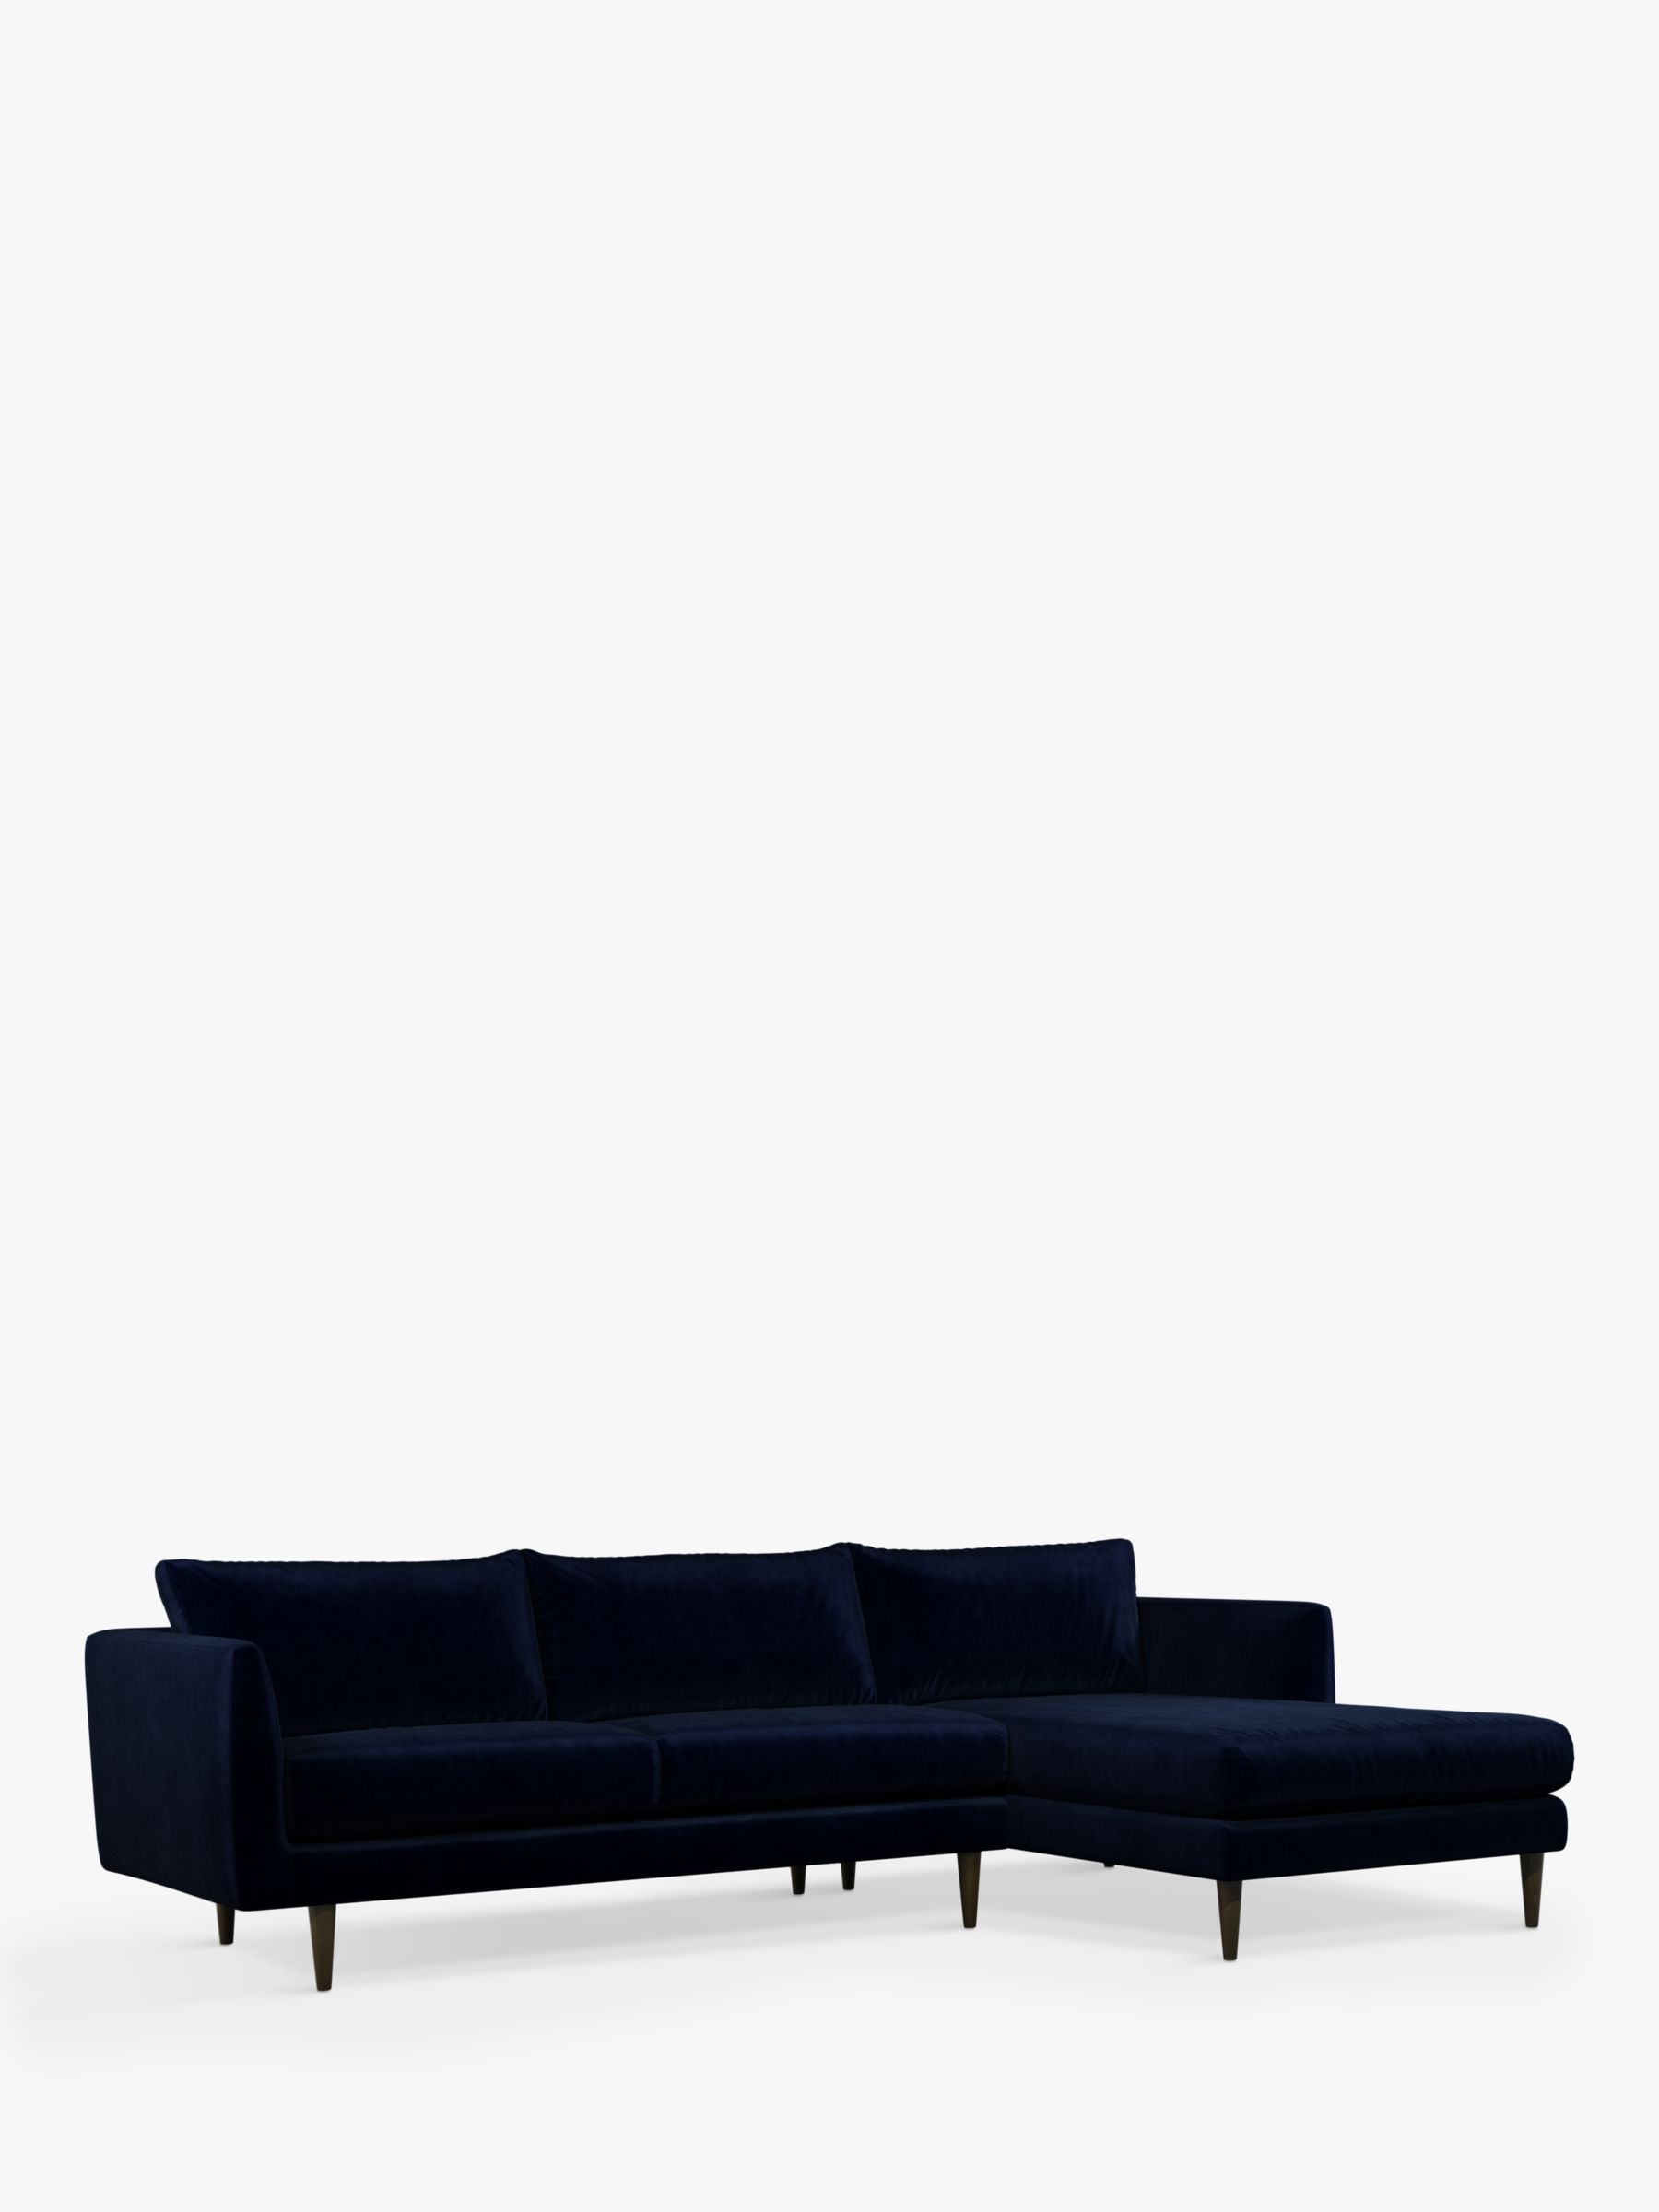 Latimer Range, John Lewis + Swoon Latimer Large 3 Seater Chaise End Sofa, Caspian Blue Velvet